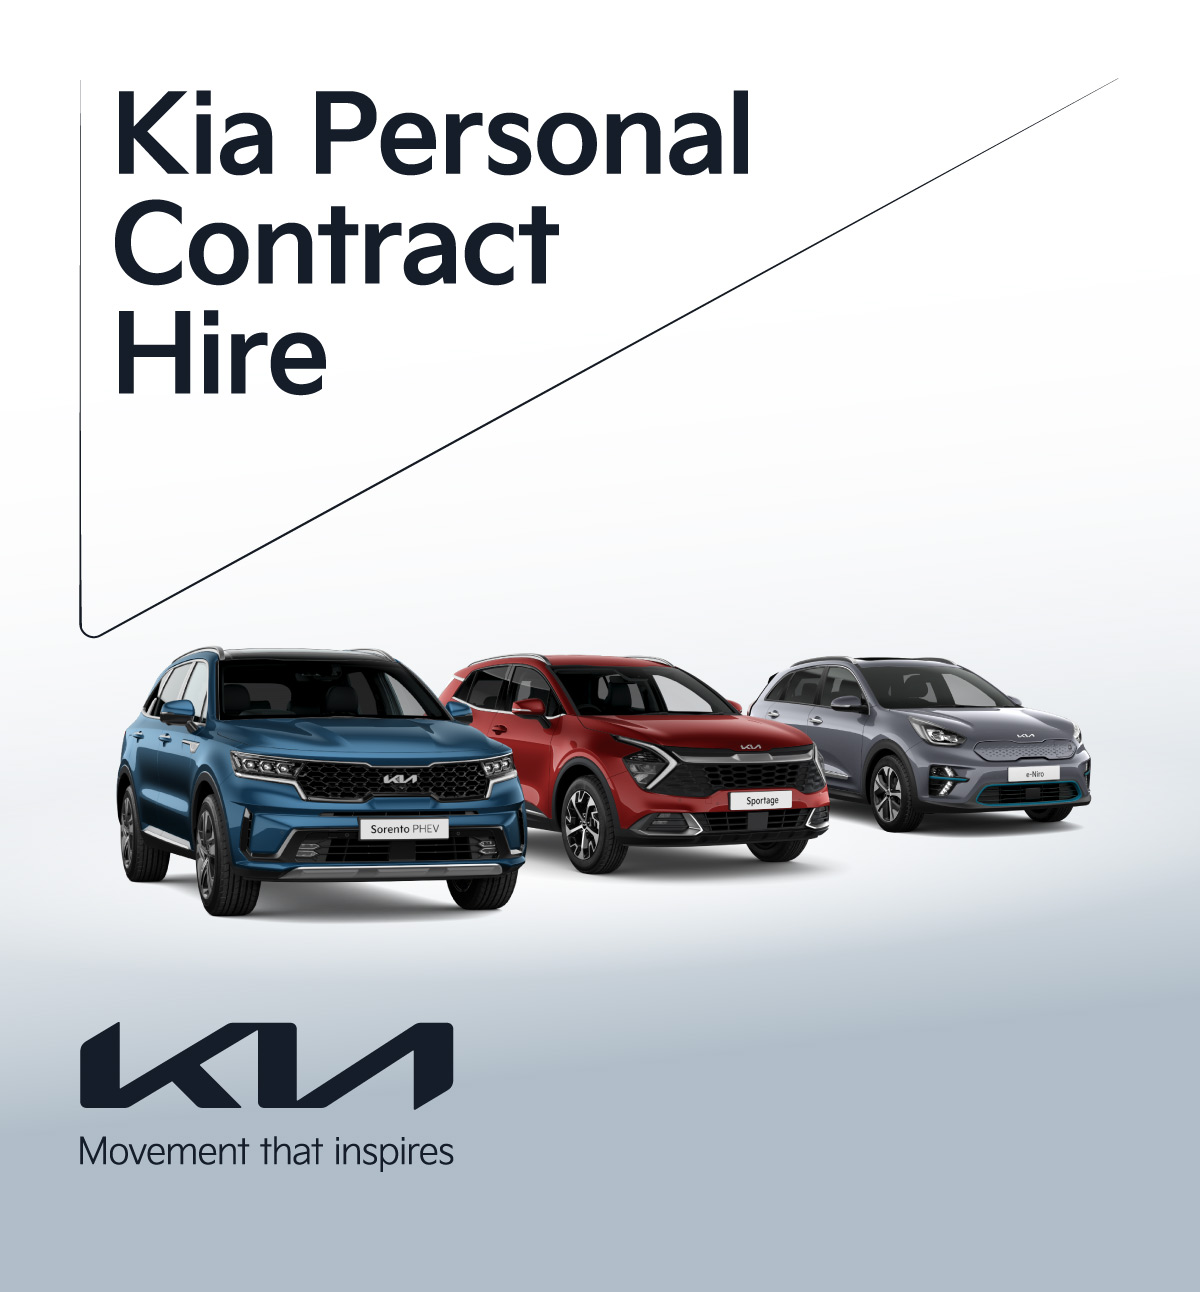 KIA Personal Contract Hire 250222